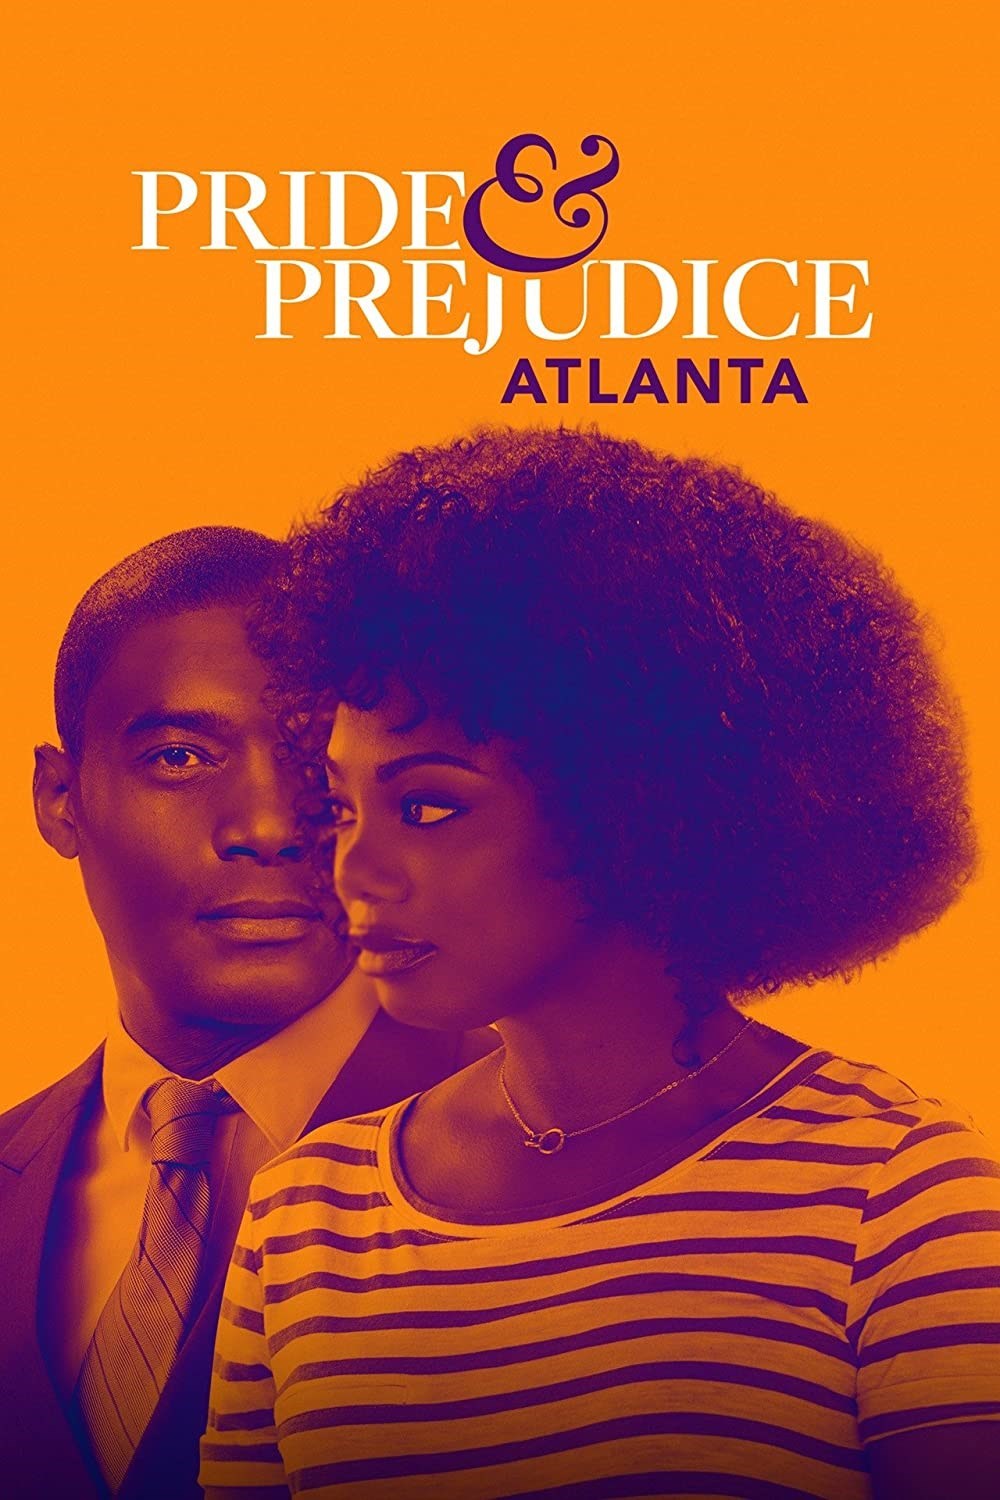 Pride & Prejudice Atlanta 2019